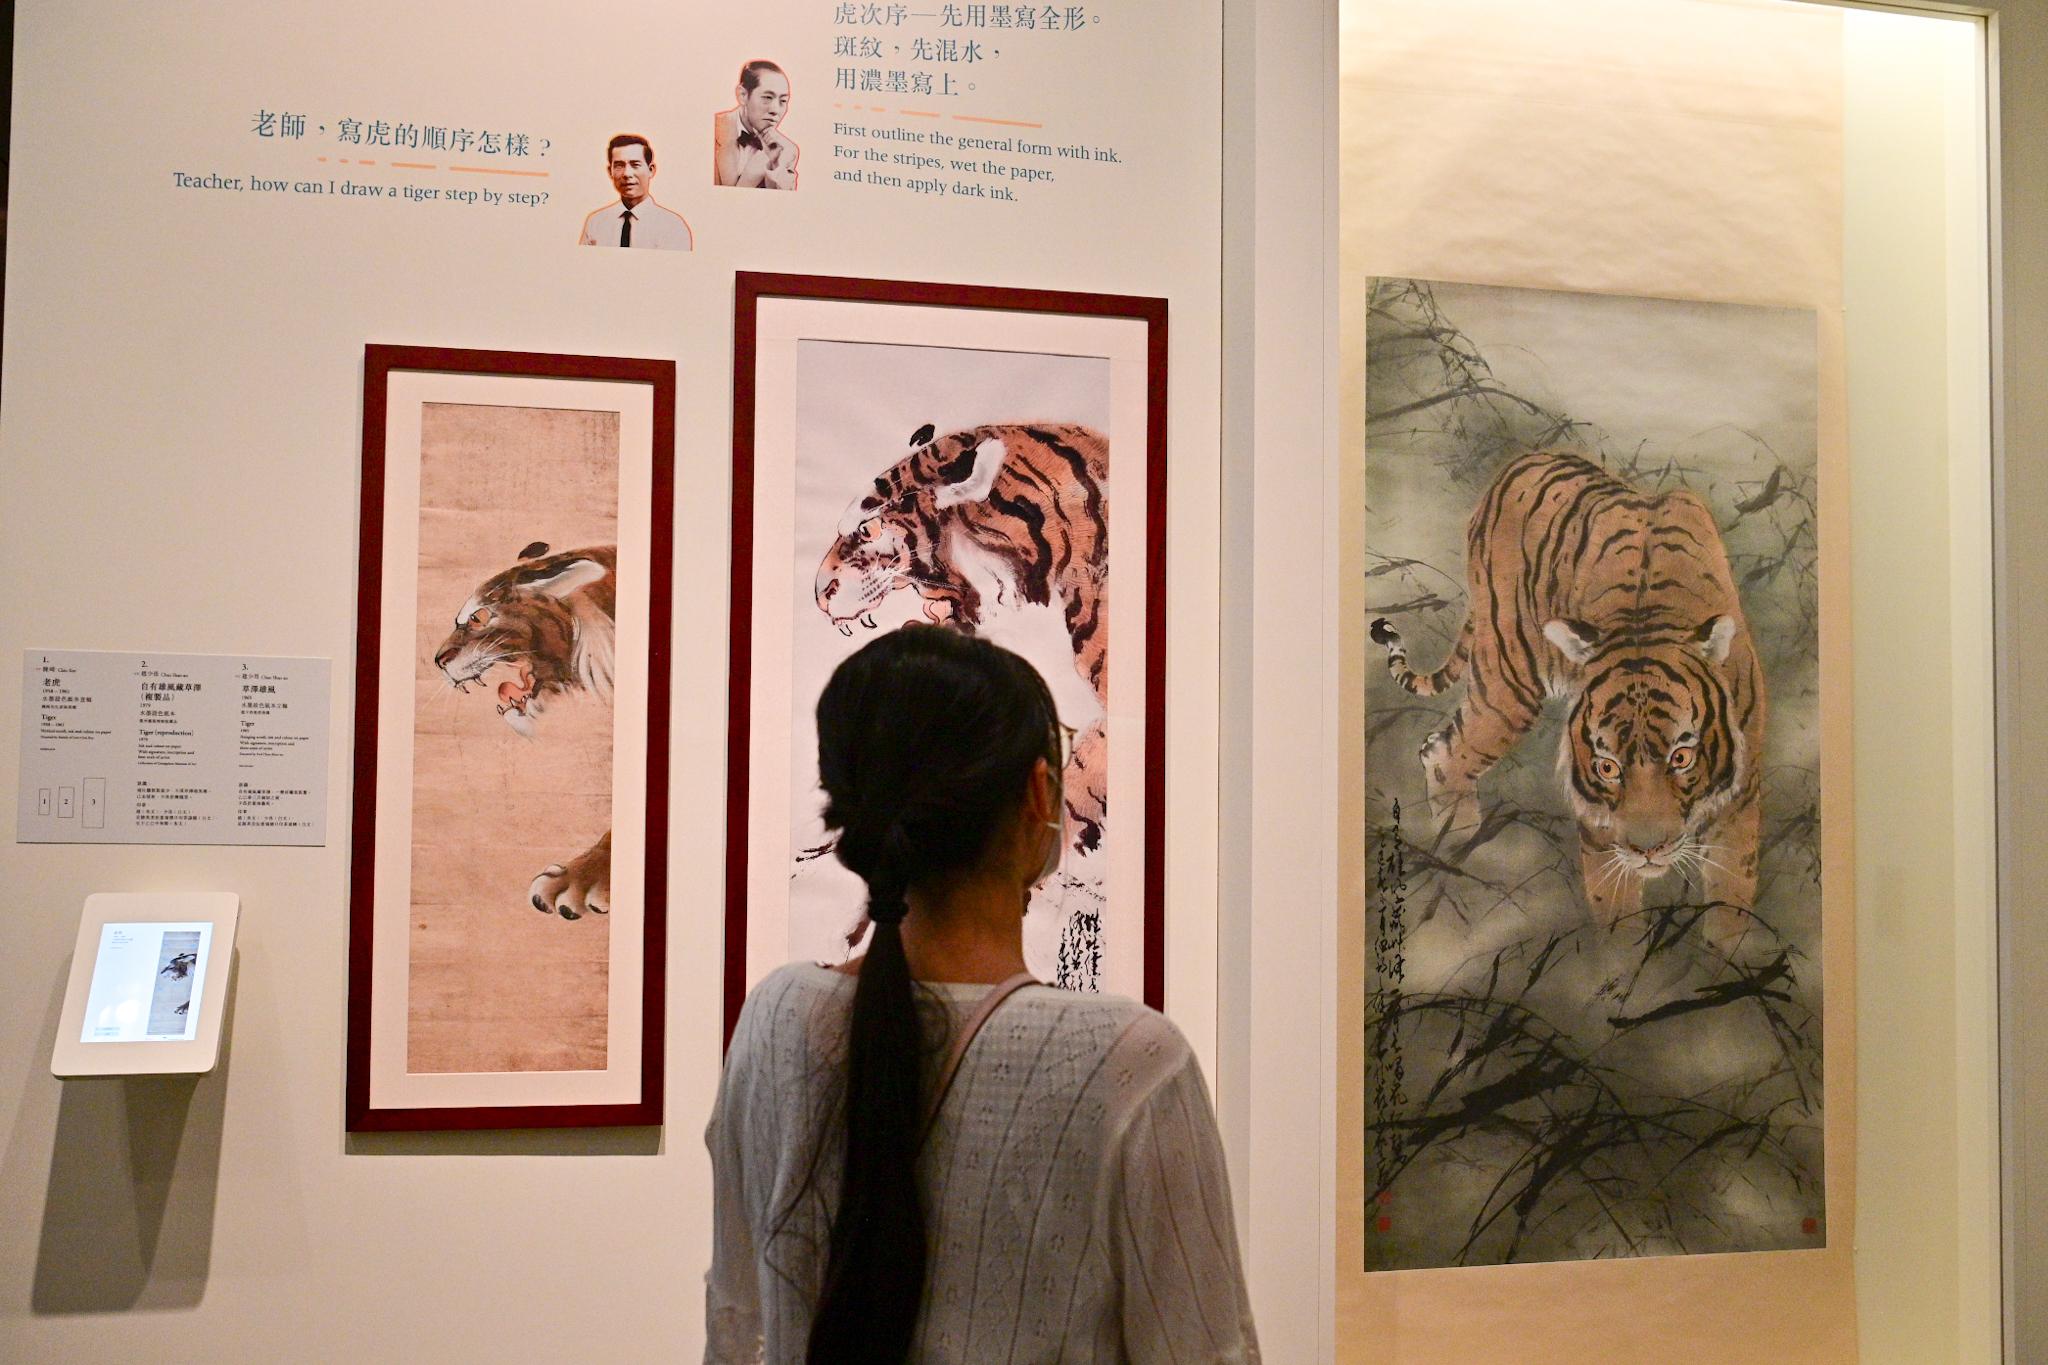 香港文化博物馆明日（九月二十一日）起举行「千里觅艺—赵少昂与陈崎师生对话」展览。图示赵少昂与陈崎关于老虎的画作。左起：陈崎作品《老虎》、赵少昂作品《自有雄风藏草泽》（复制品）及赵少昂作品《草泽雄风》。